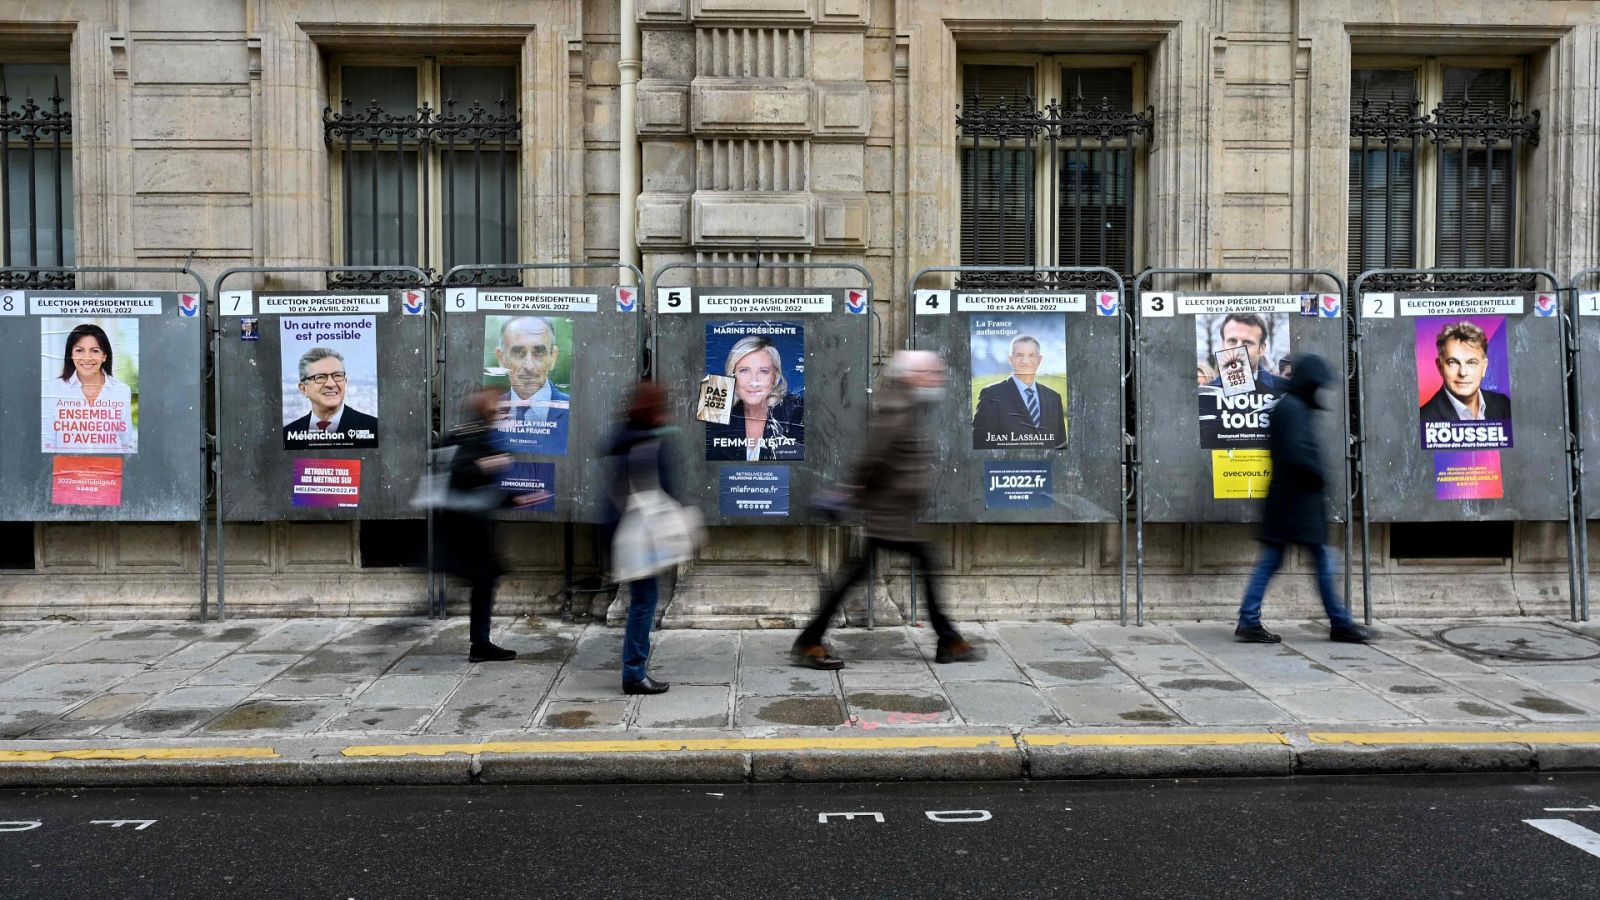 Las encuestras auguran un mal futuro a la izquierda francesa 